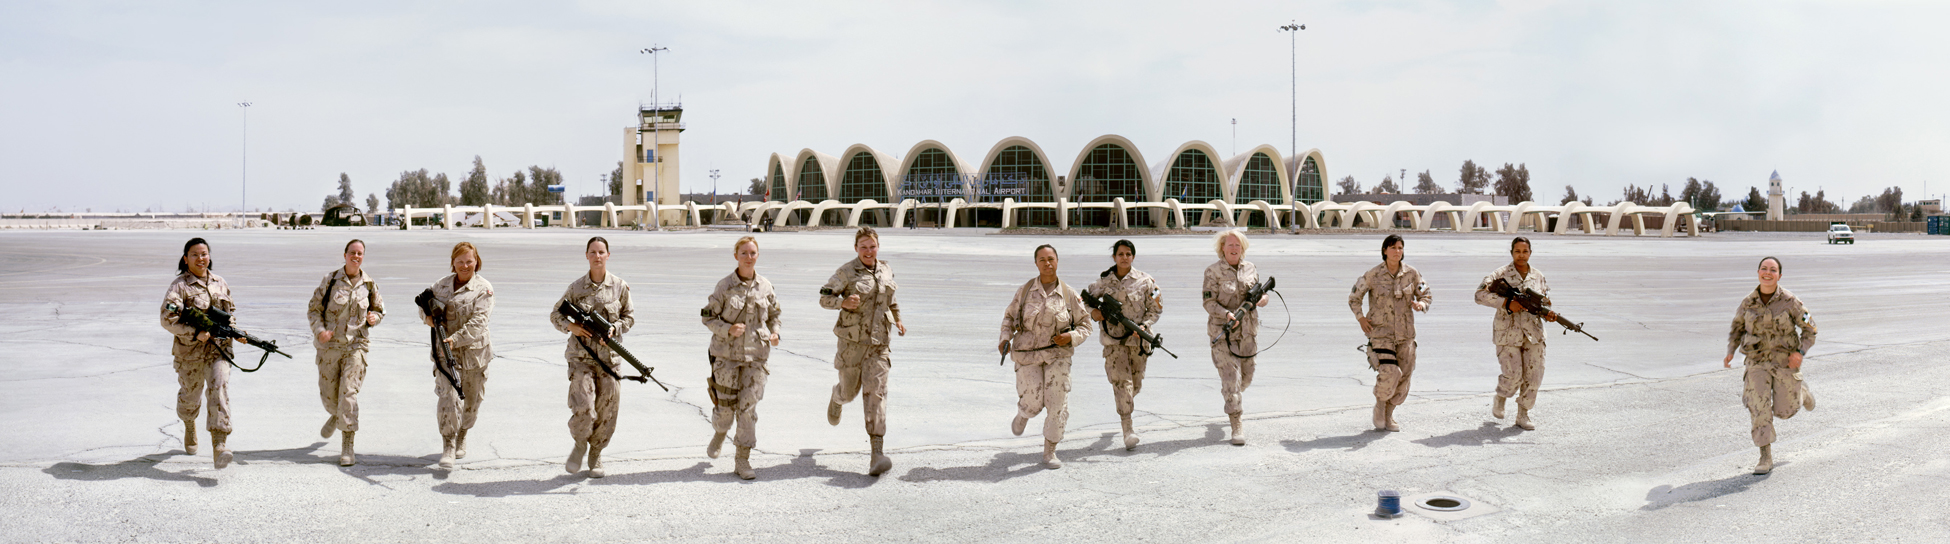 Aéroport international de Kandahar, 2009